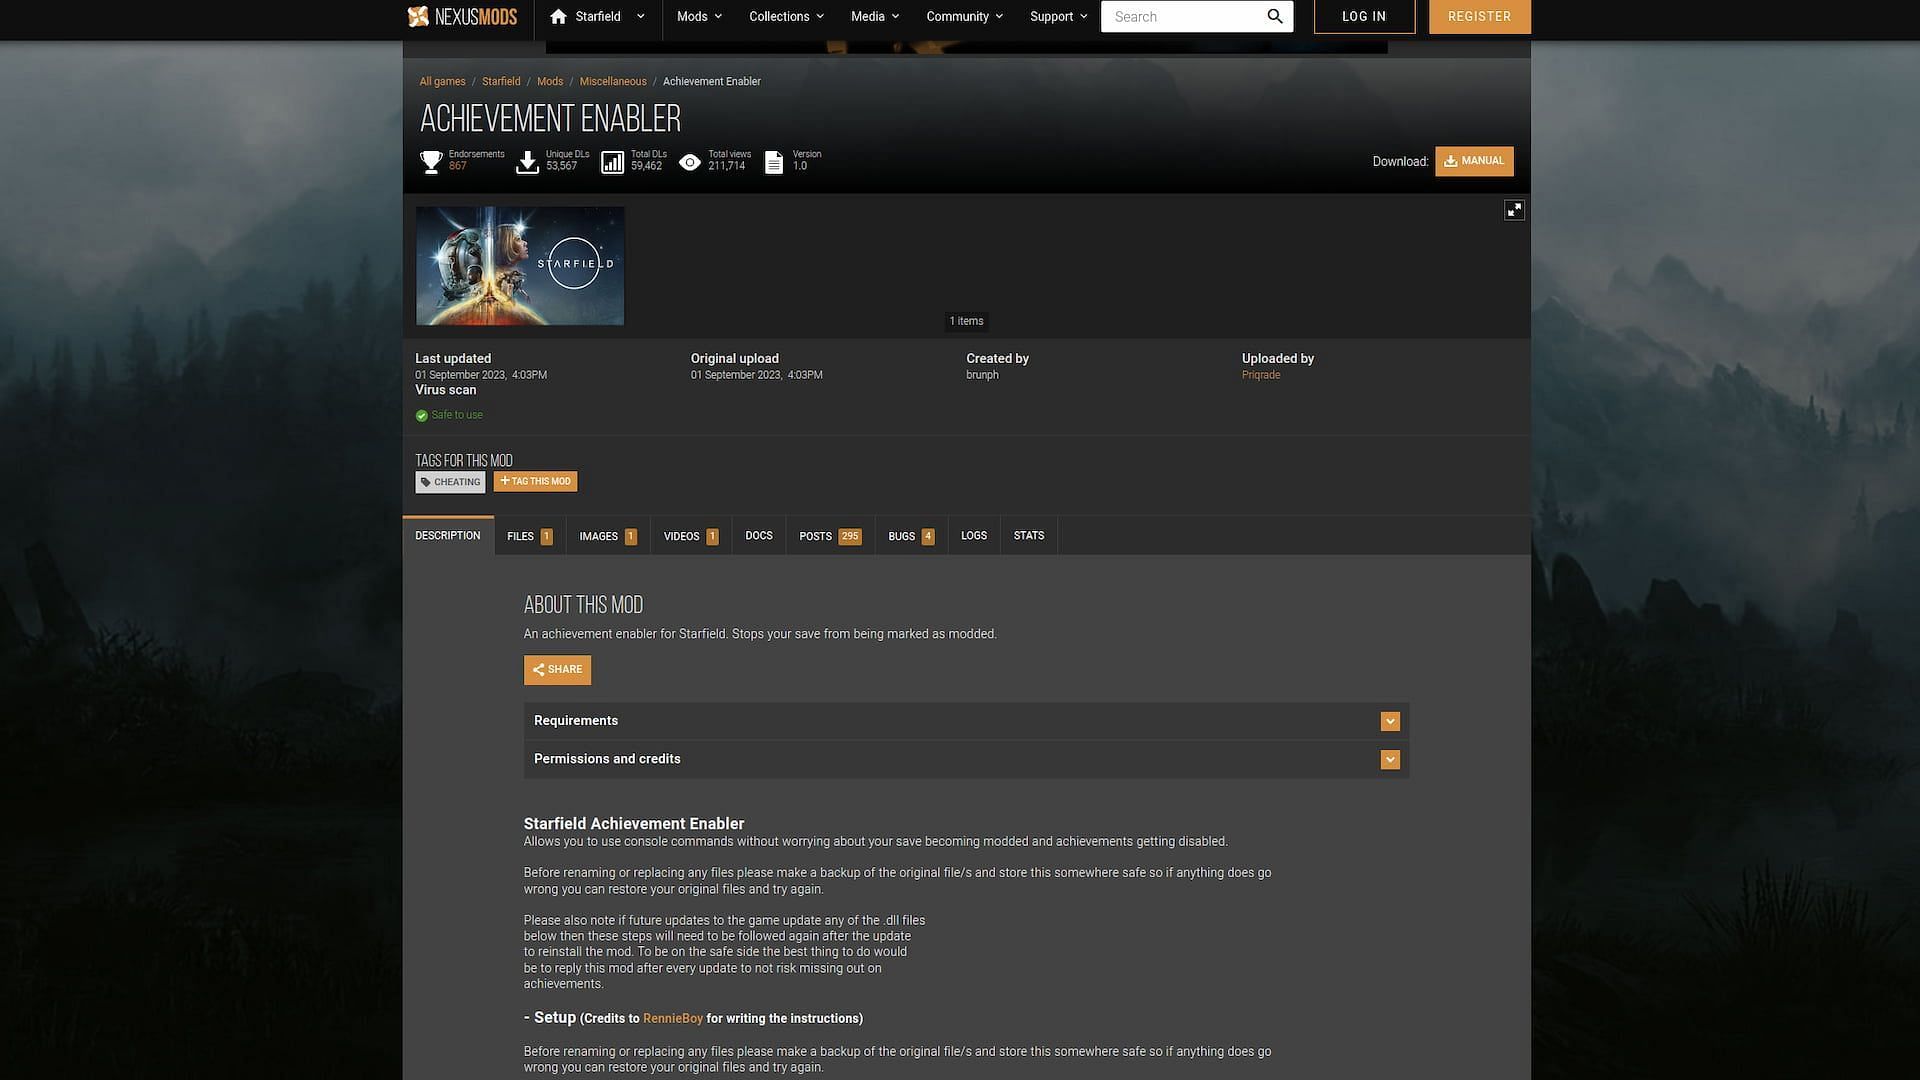 The Achievement Enabler mod webpage (Image via Nexusmods/Priqrade)